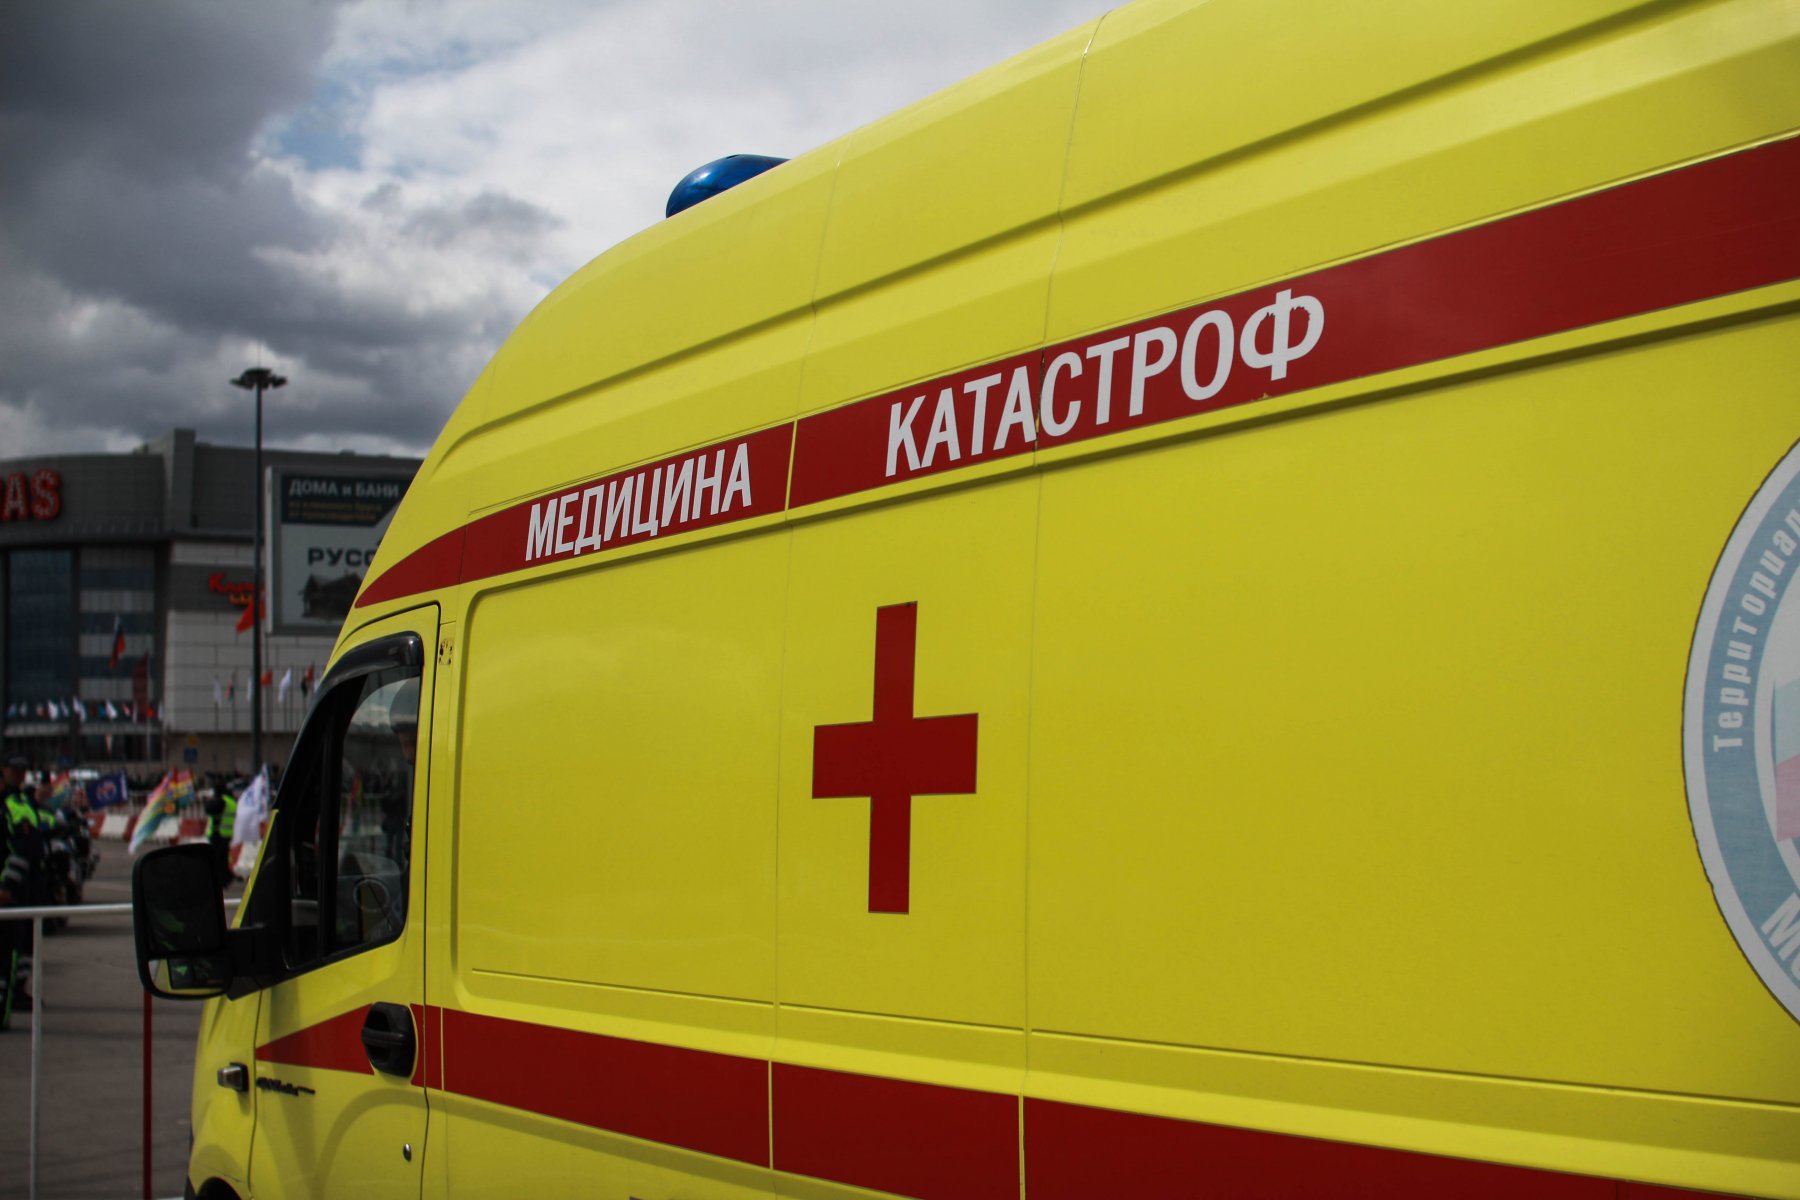 СМИ: семилетняя девочка утонула в дачном бассейне под Щелково 